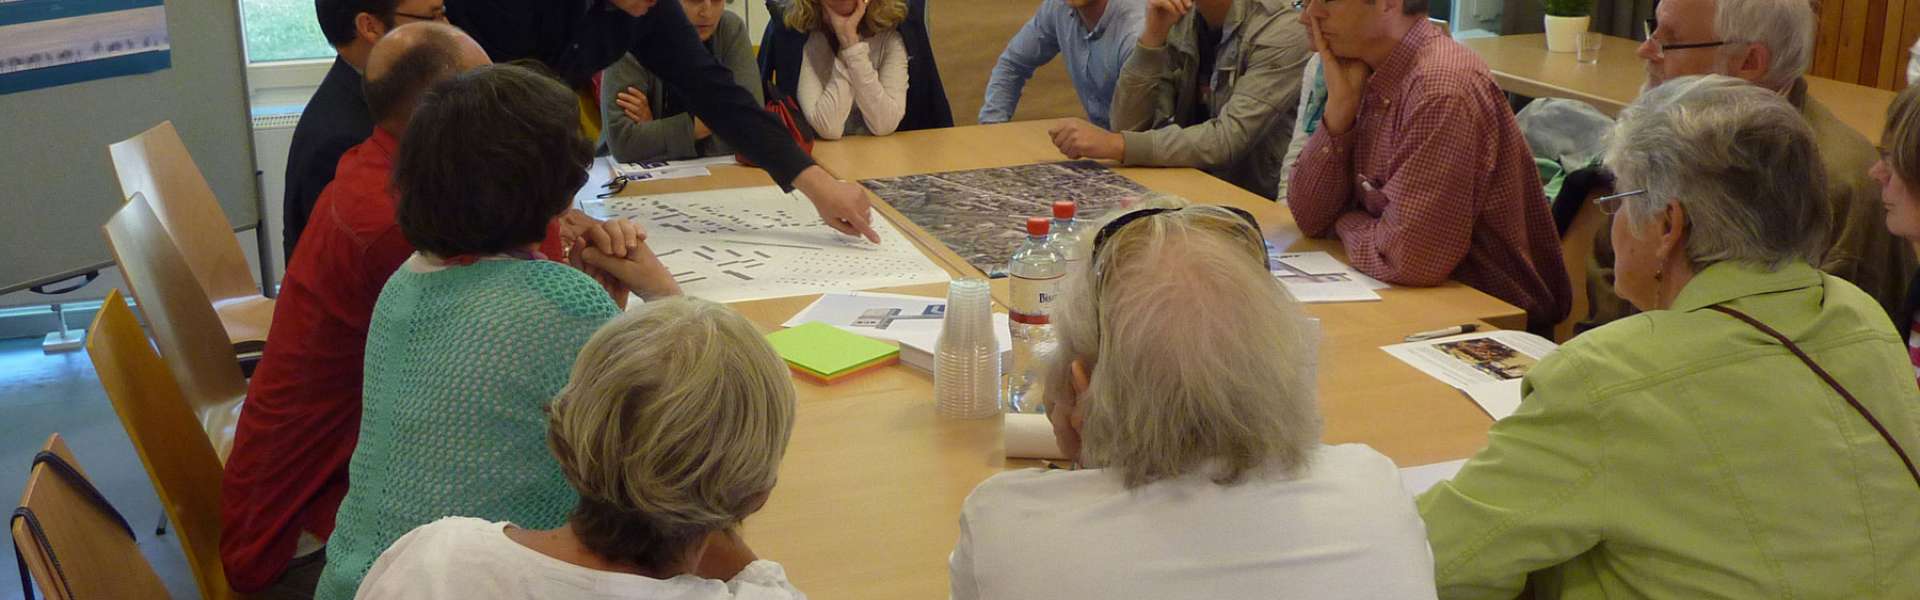 Engagiert brachten die Bürgerinnen und Bürger beim Workshop ihre Ideen zu den Themen Bau, Lärm, Verkehr und Umfeld der Haltestelle ein.